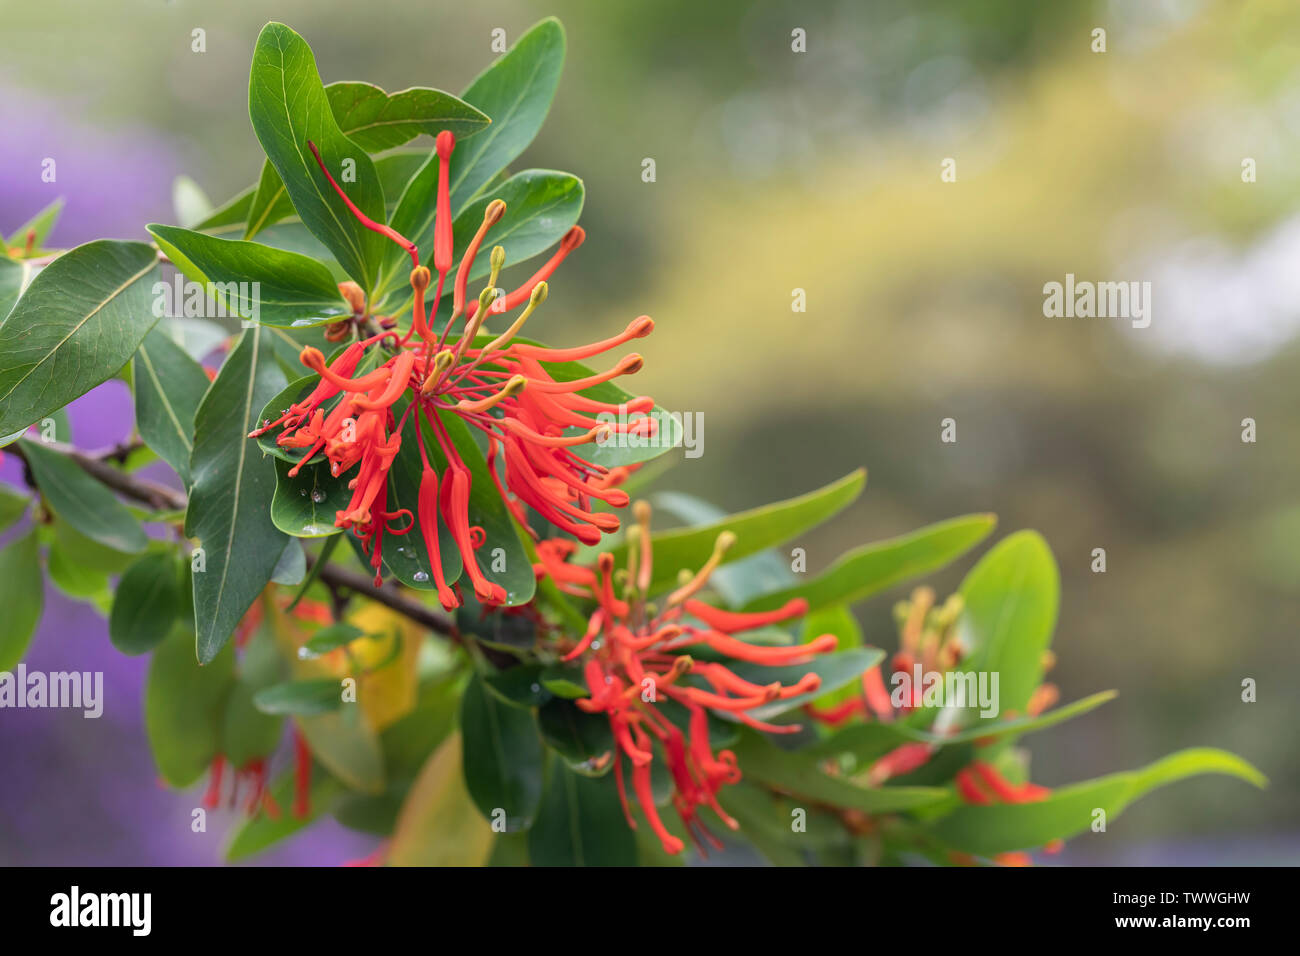 Nahaufnahme von Embothrium coccineum - chilenischer Feuerbusch blüht in einem englischen Garten, Großbritannien Stockfoto